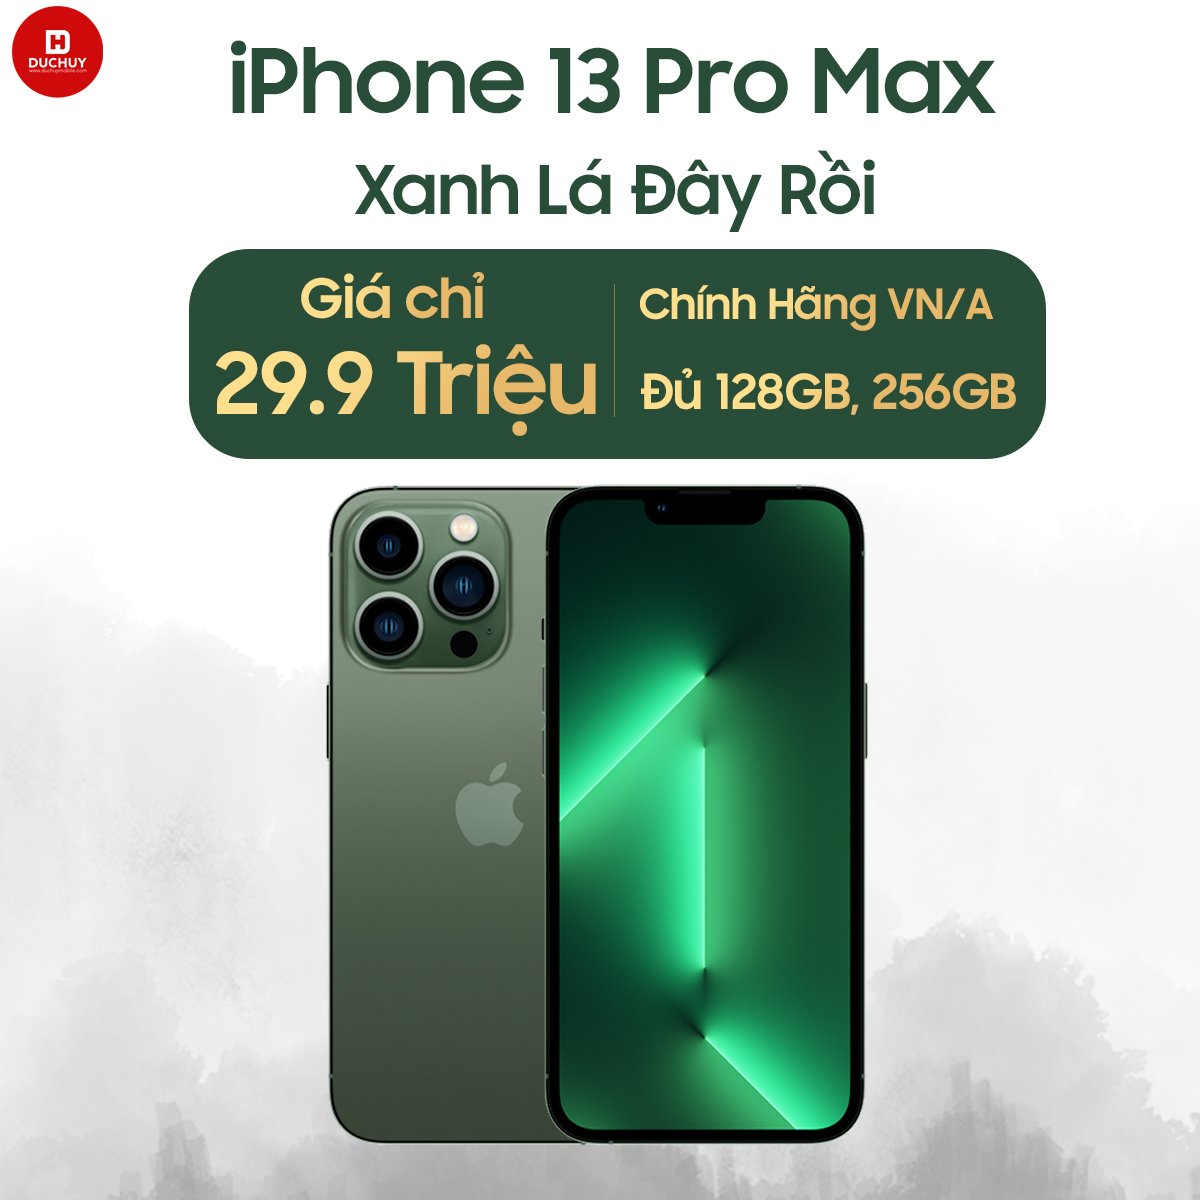 giá iPhone 13 Pro Max Xanh Lá